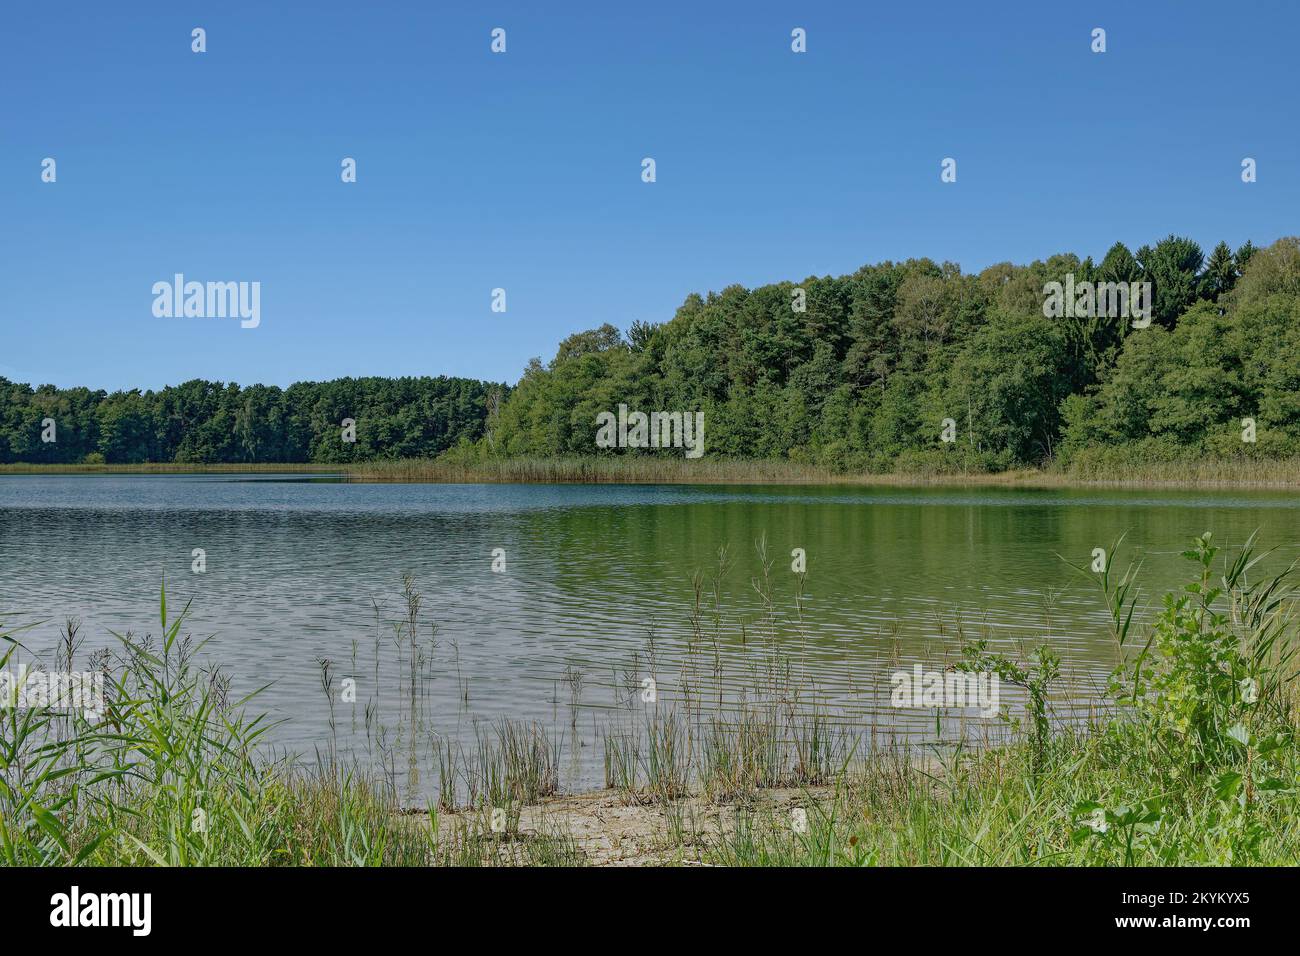 Großer Weisssee See in der Nähe von Wesenberg, Mecklenburg-Seengebiet, Deutschland Stockfoto